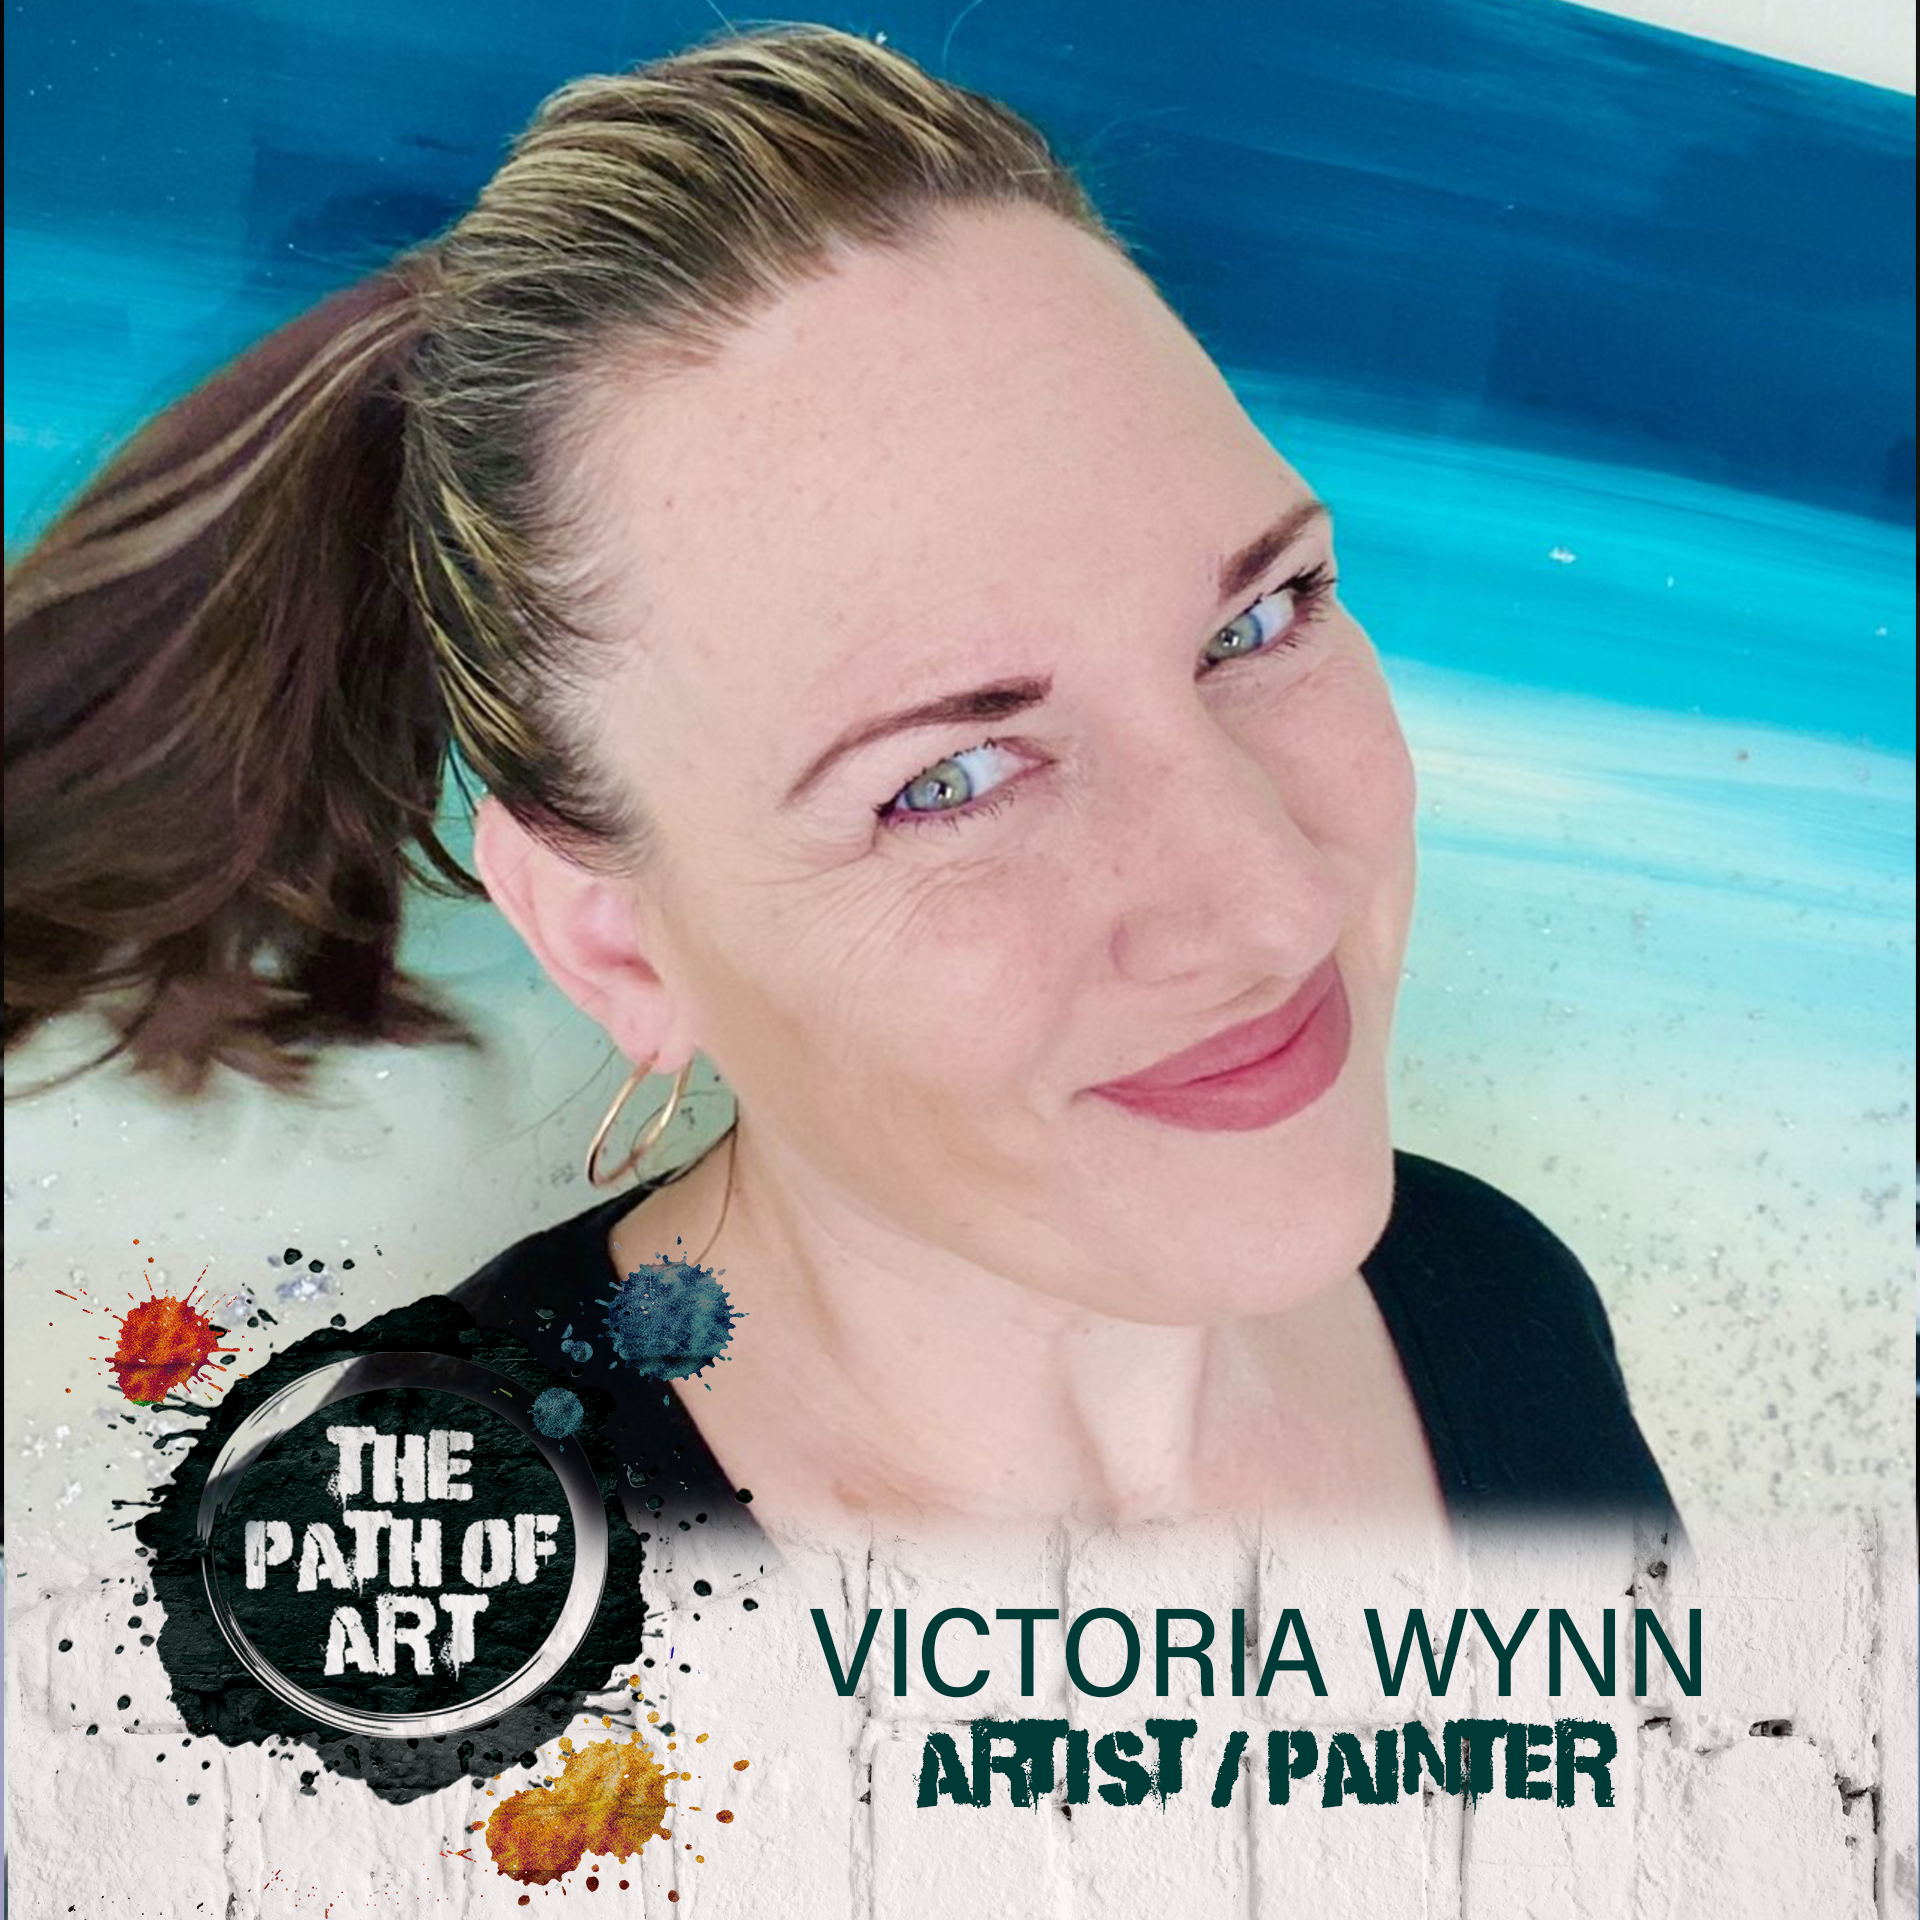 #13 Victoria Wynn: Follow that feeling